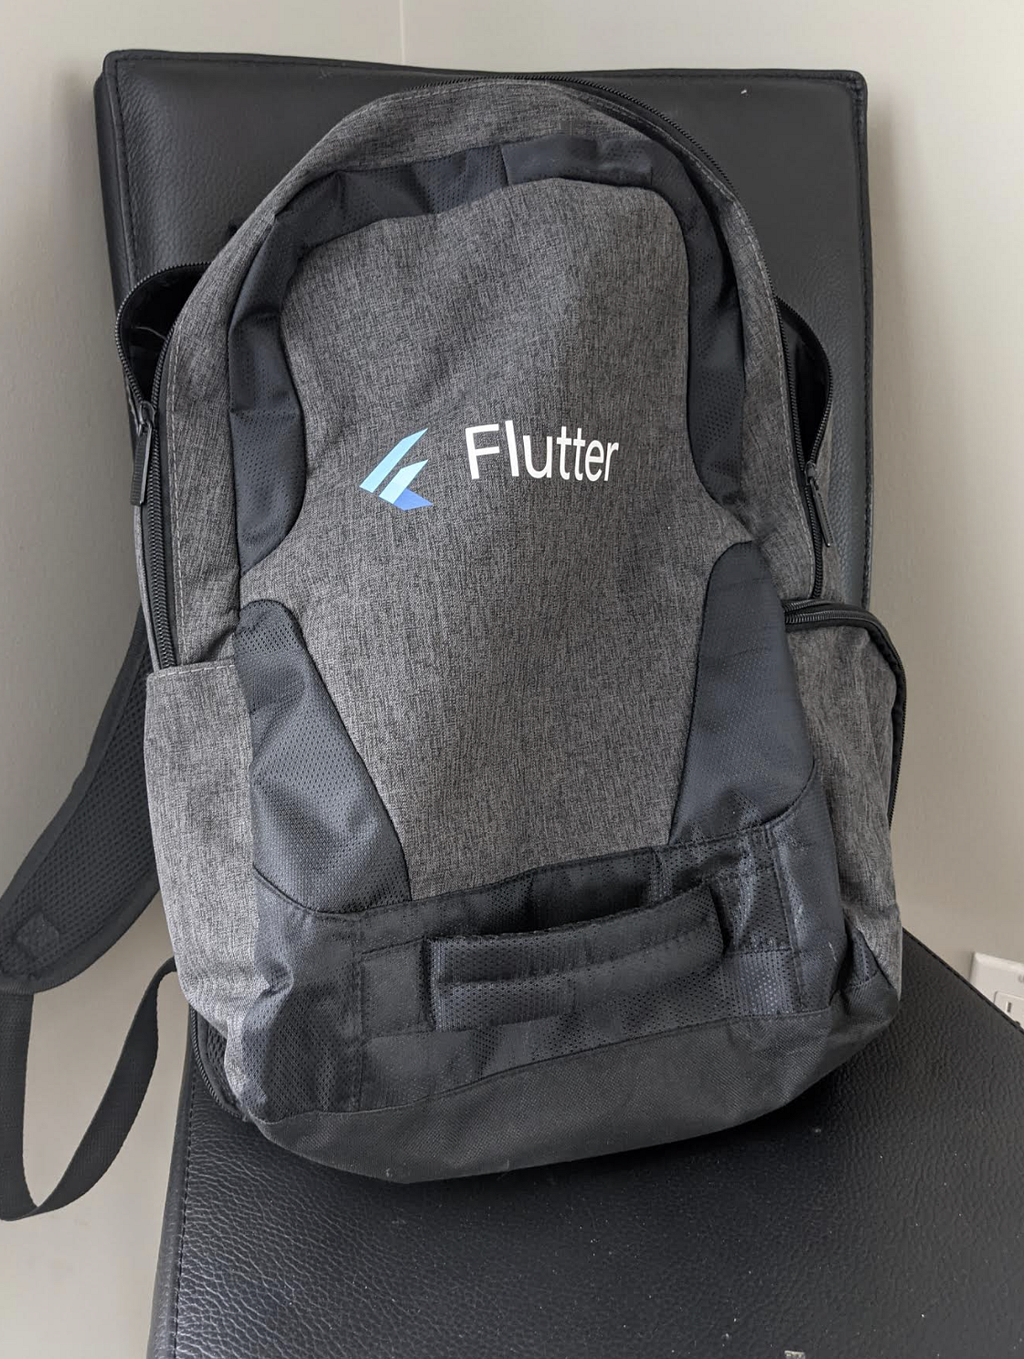 Mon sac à dos, avec le logo de Flutter!